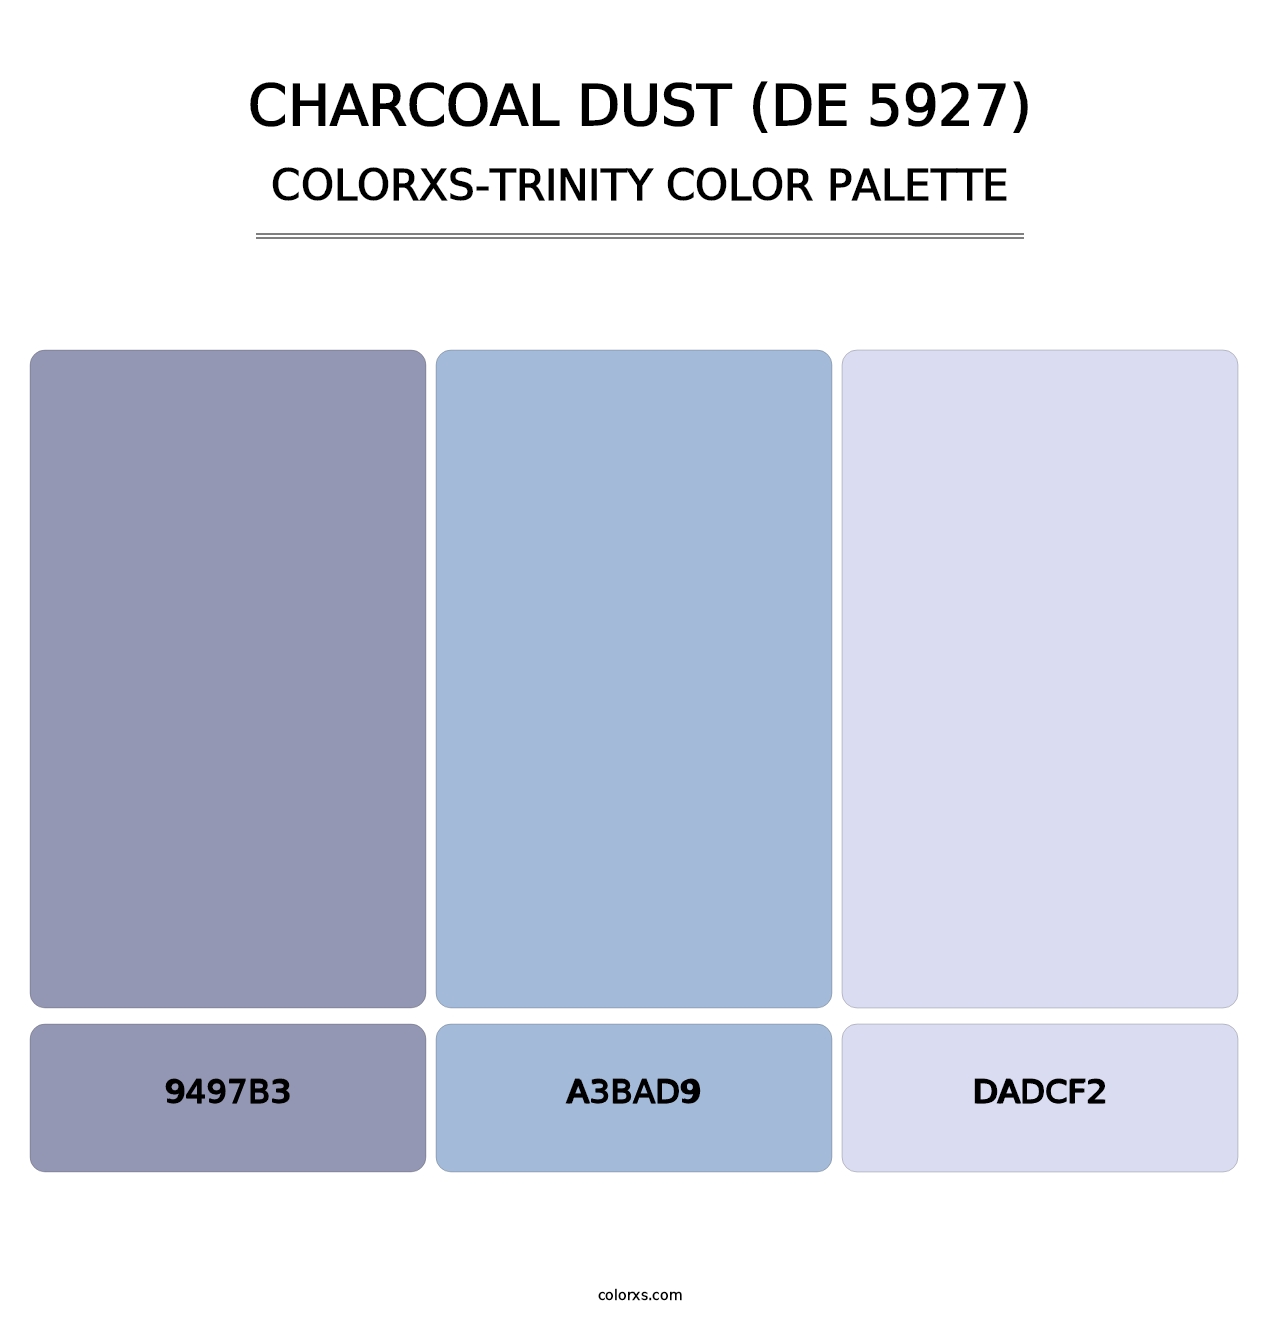 Charcoal Dust (DE 5927) - Colorxs Trinity Palette